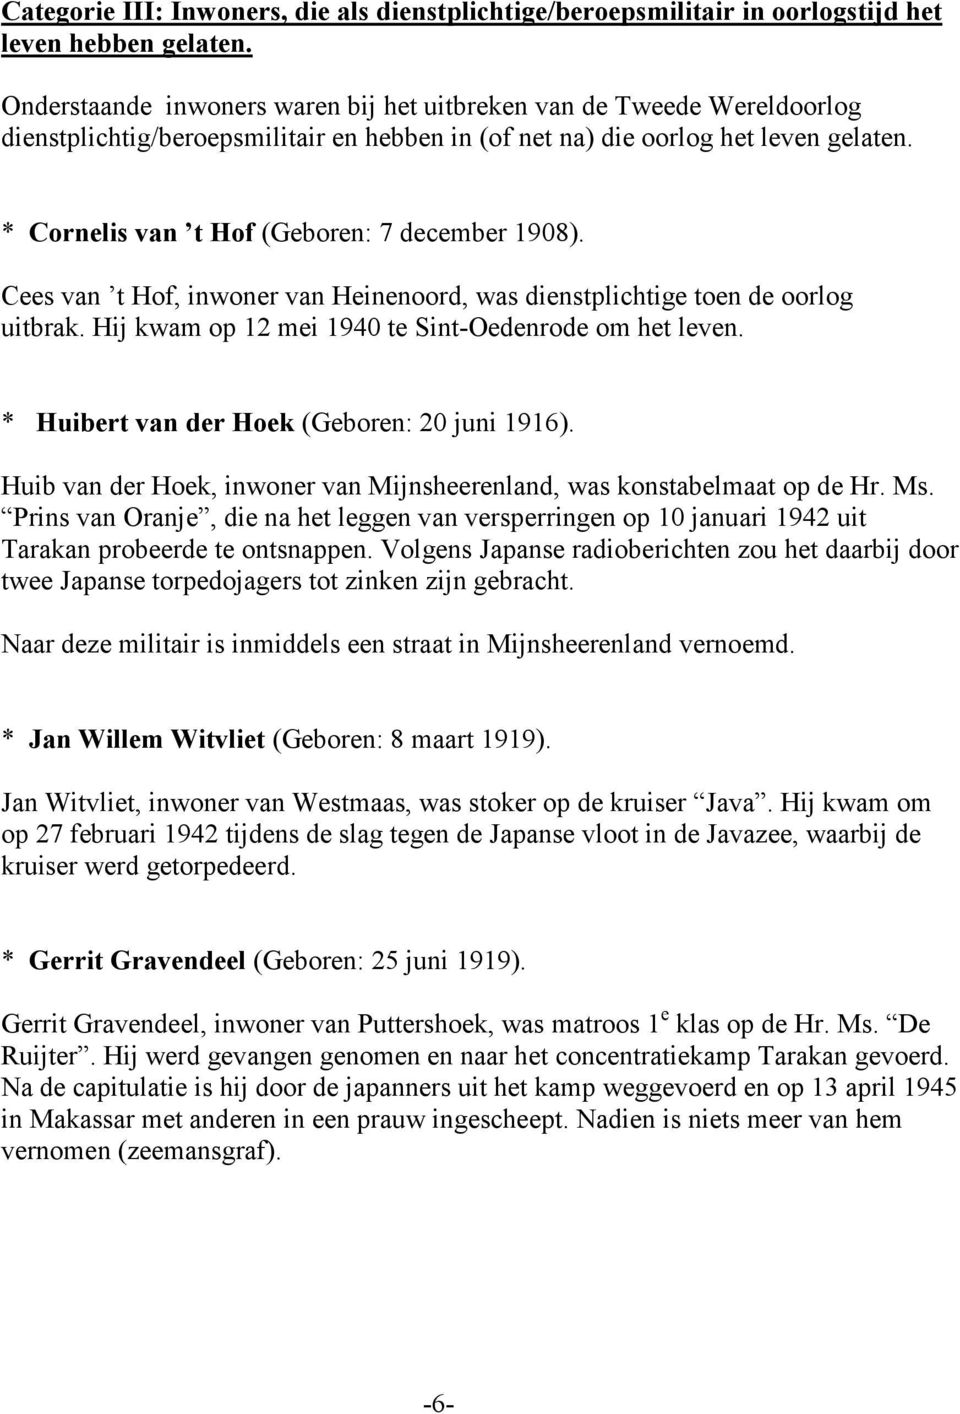 * Cornelis van t Hof (Geboren: 7 december 1908). Cees van t Hof, inwoner van Heinenoord, was dienstplichtige toen de oorlog uitbrak. Hij kwam op 12 mei 1940 te Sint-Oedenrode om het leven.